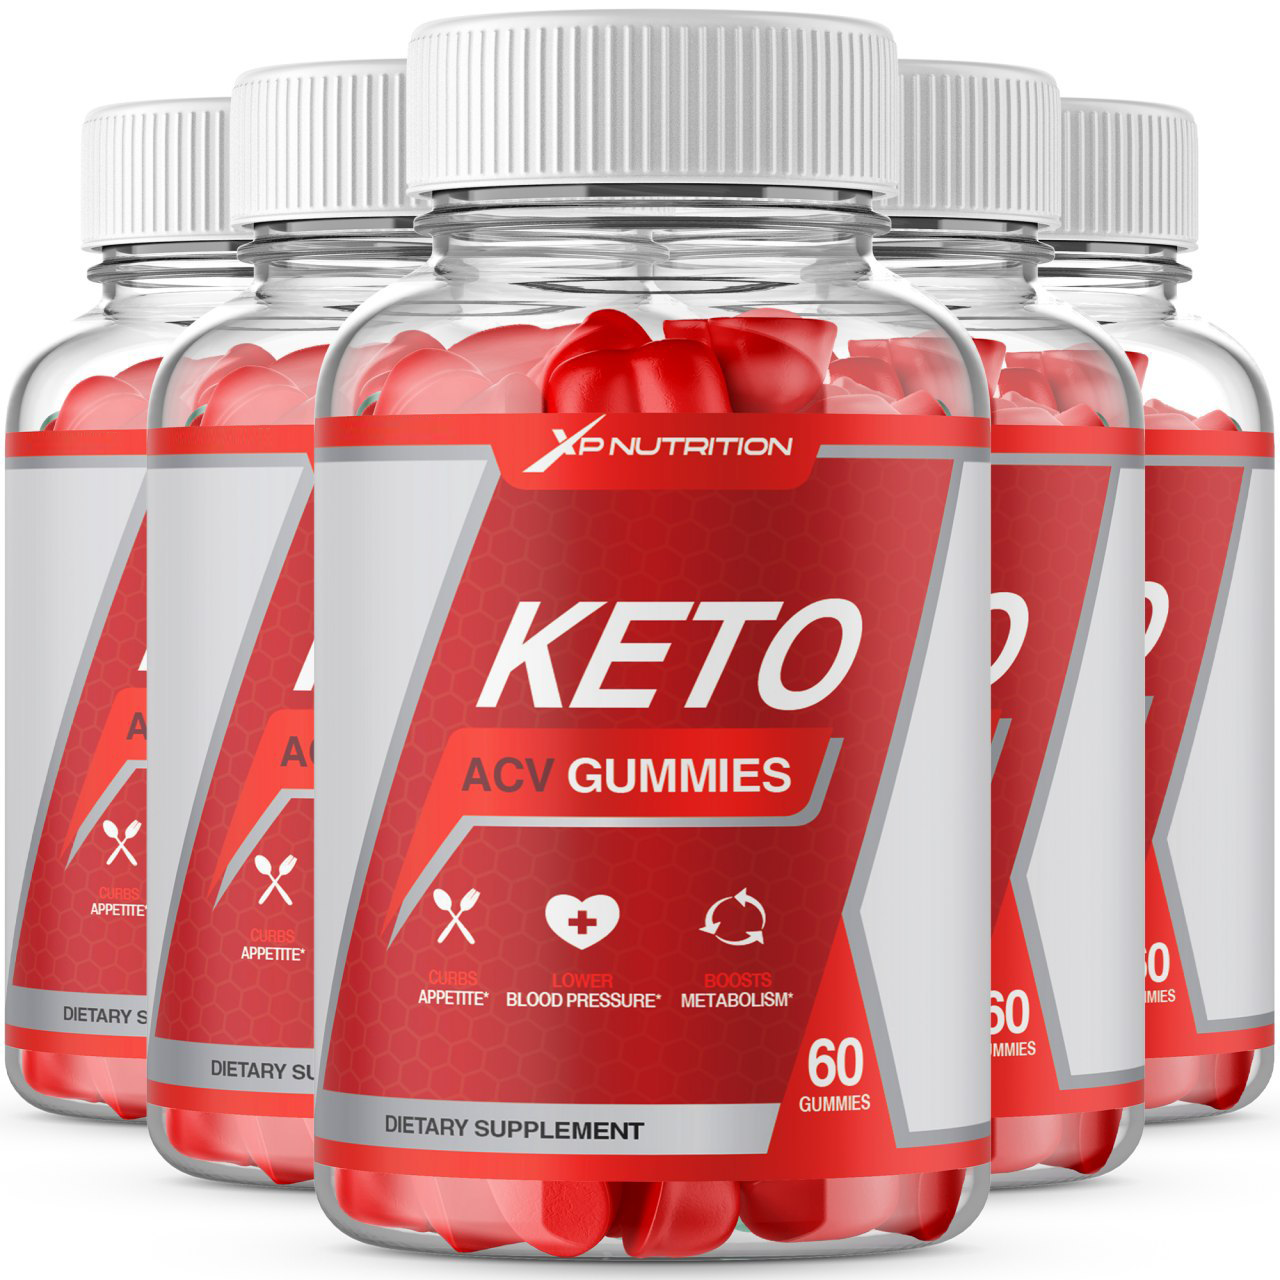 XP Nutrition Keto ACV Gummies